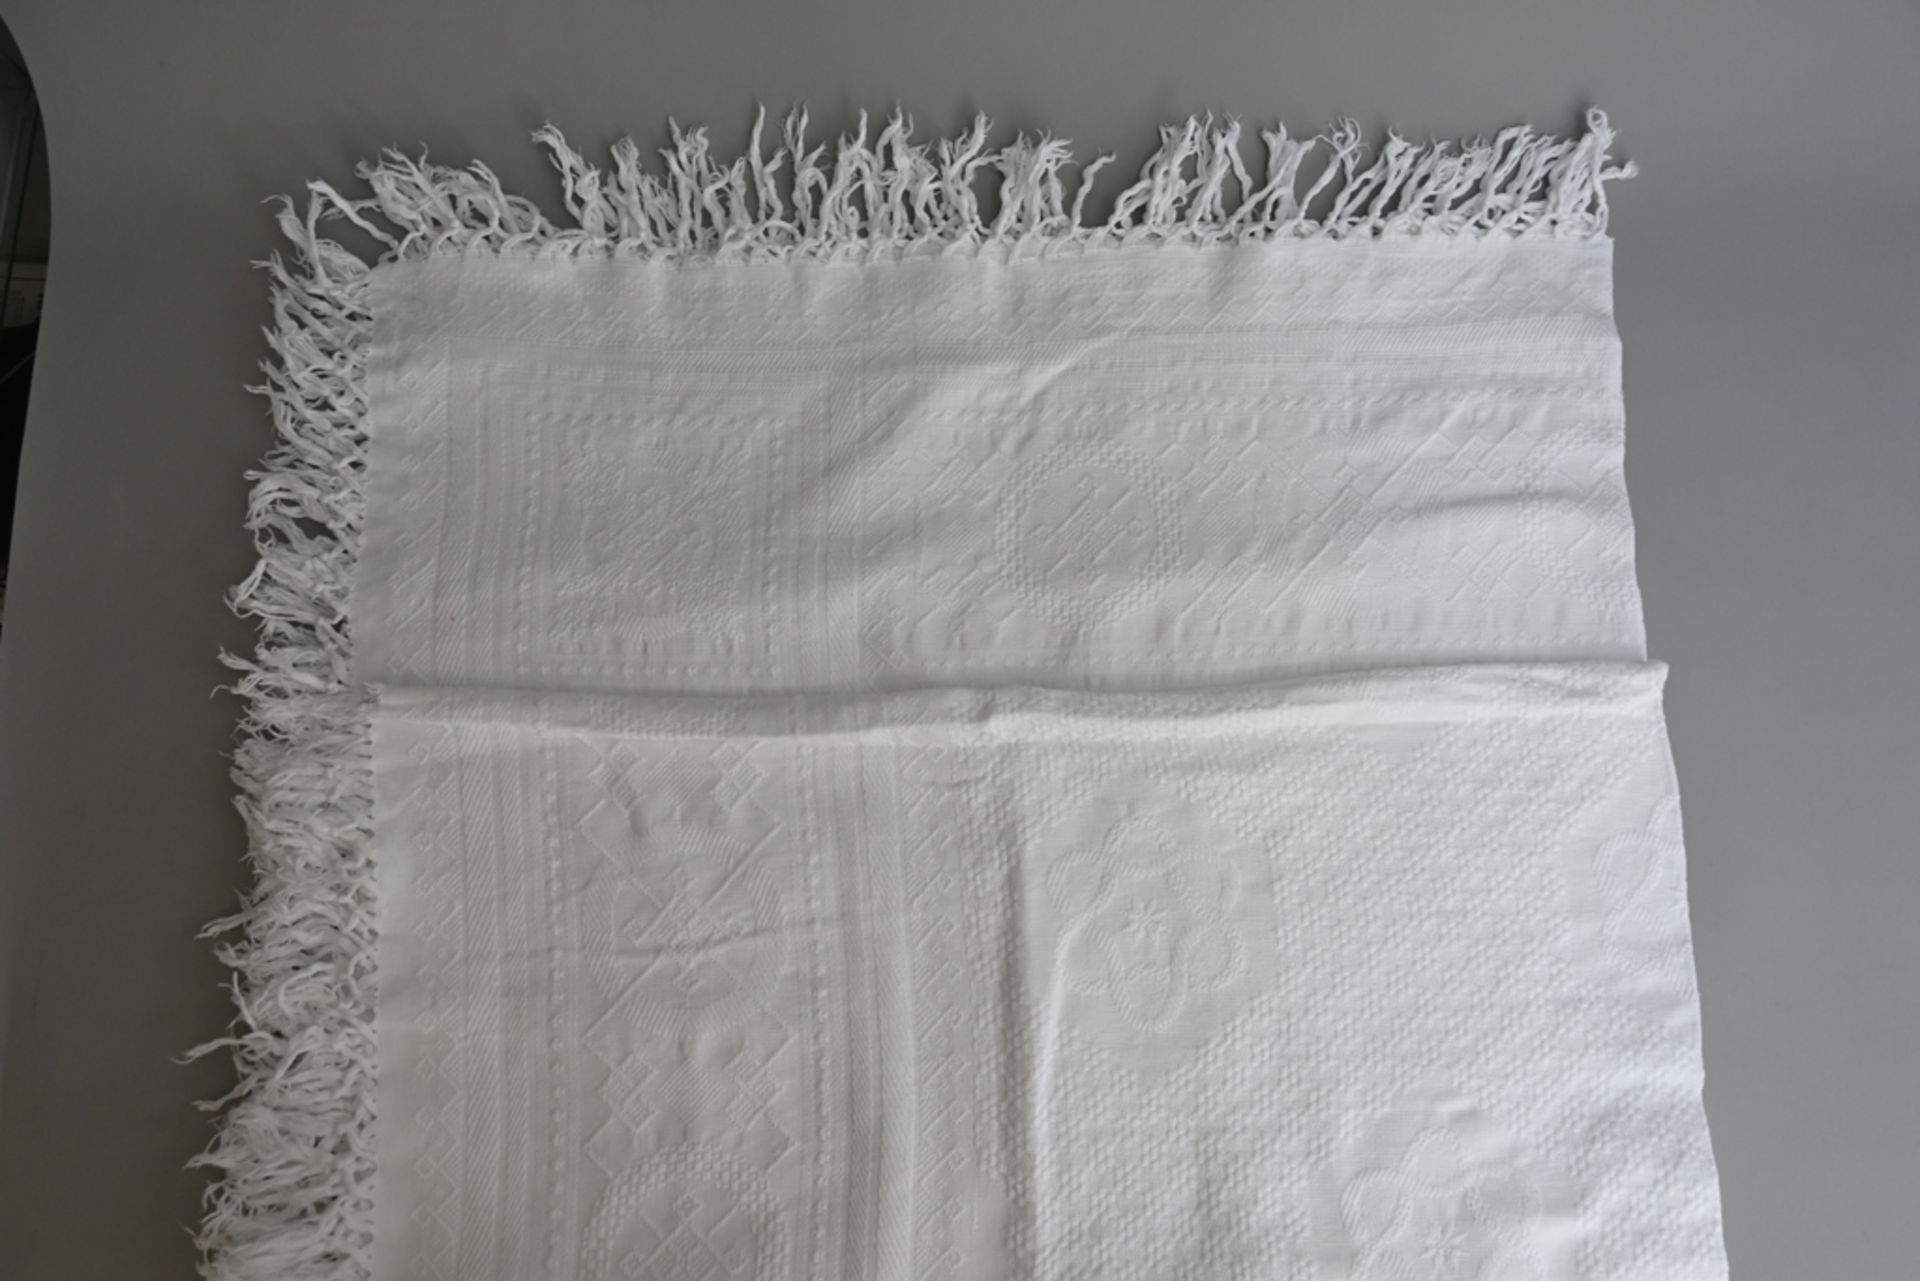 Tafeltuch, Baumwolle weiß um 1880, mit klassischen Webornamenten der Zeit, umlaufend Fransen